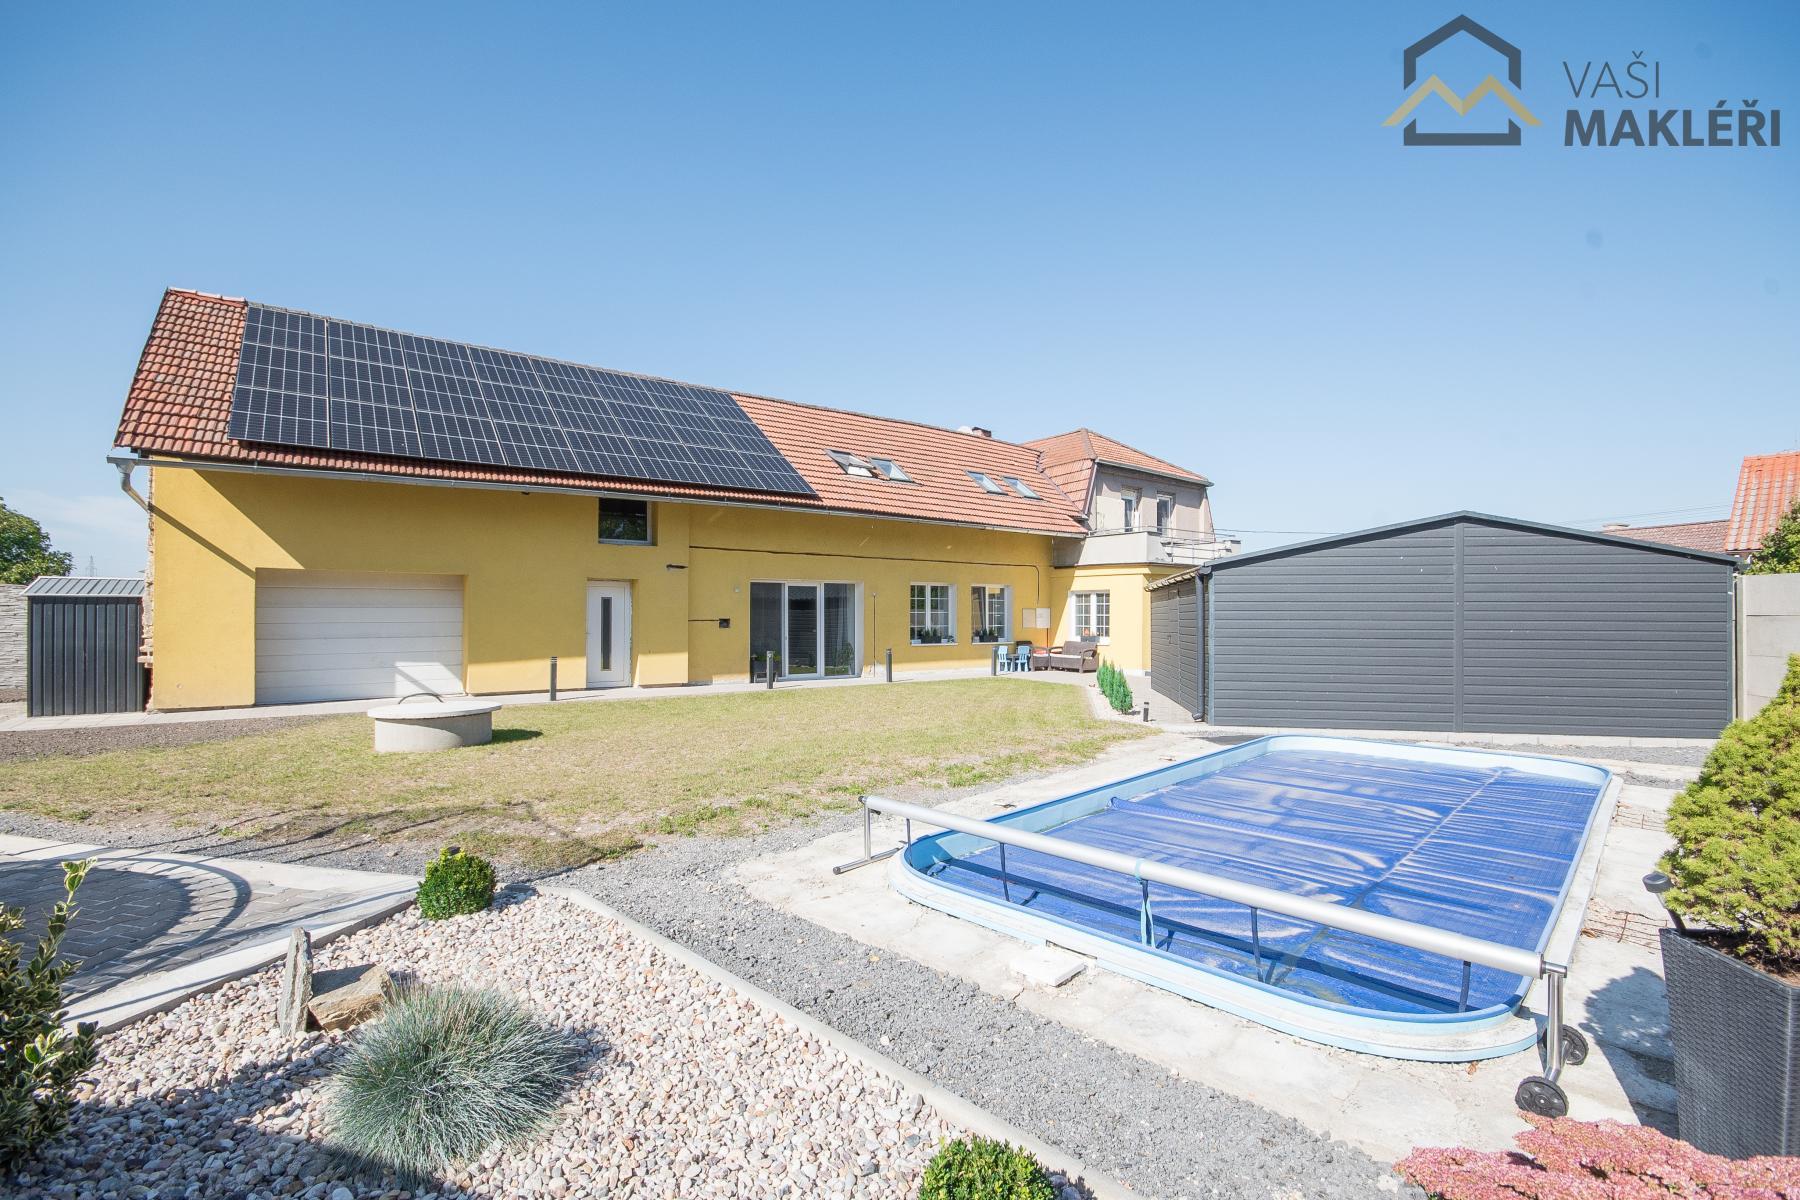 Prostorný rodinný dům s pozemkem 830m2, bazénem, fotovoltaikou, tepelným čerpadlem 